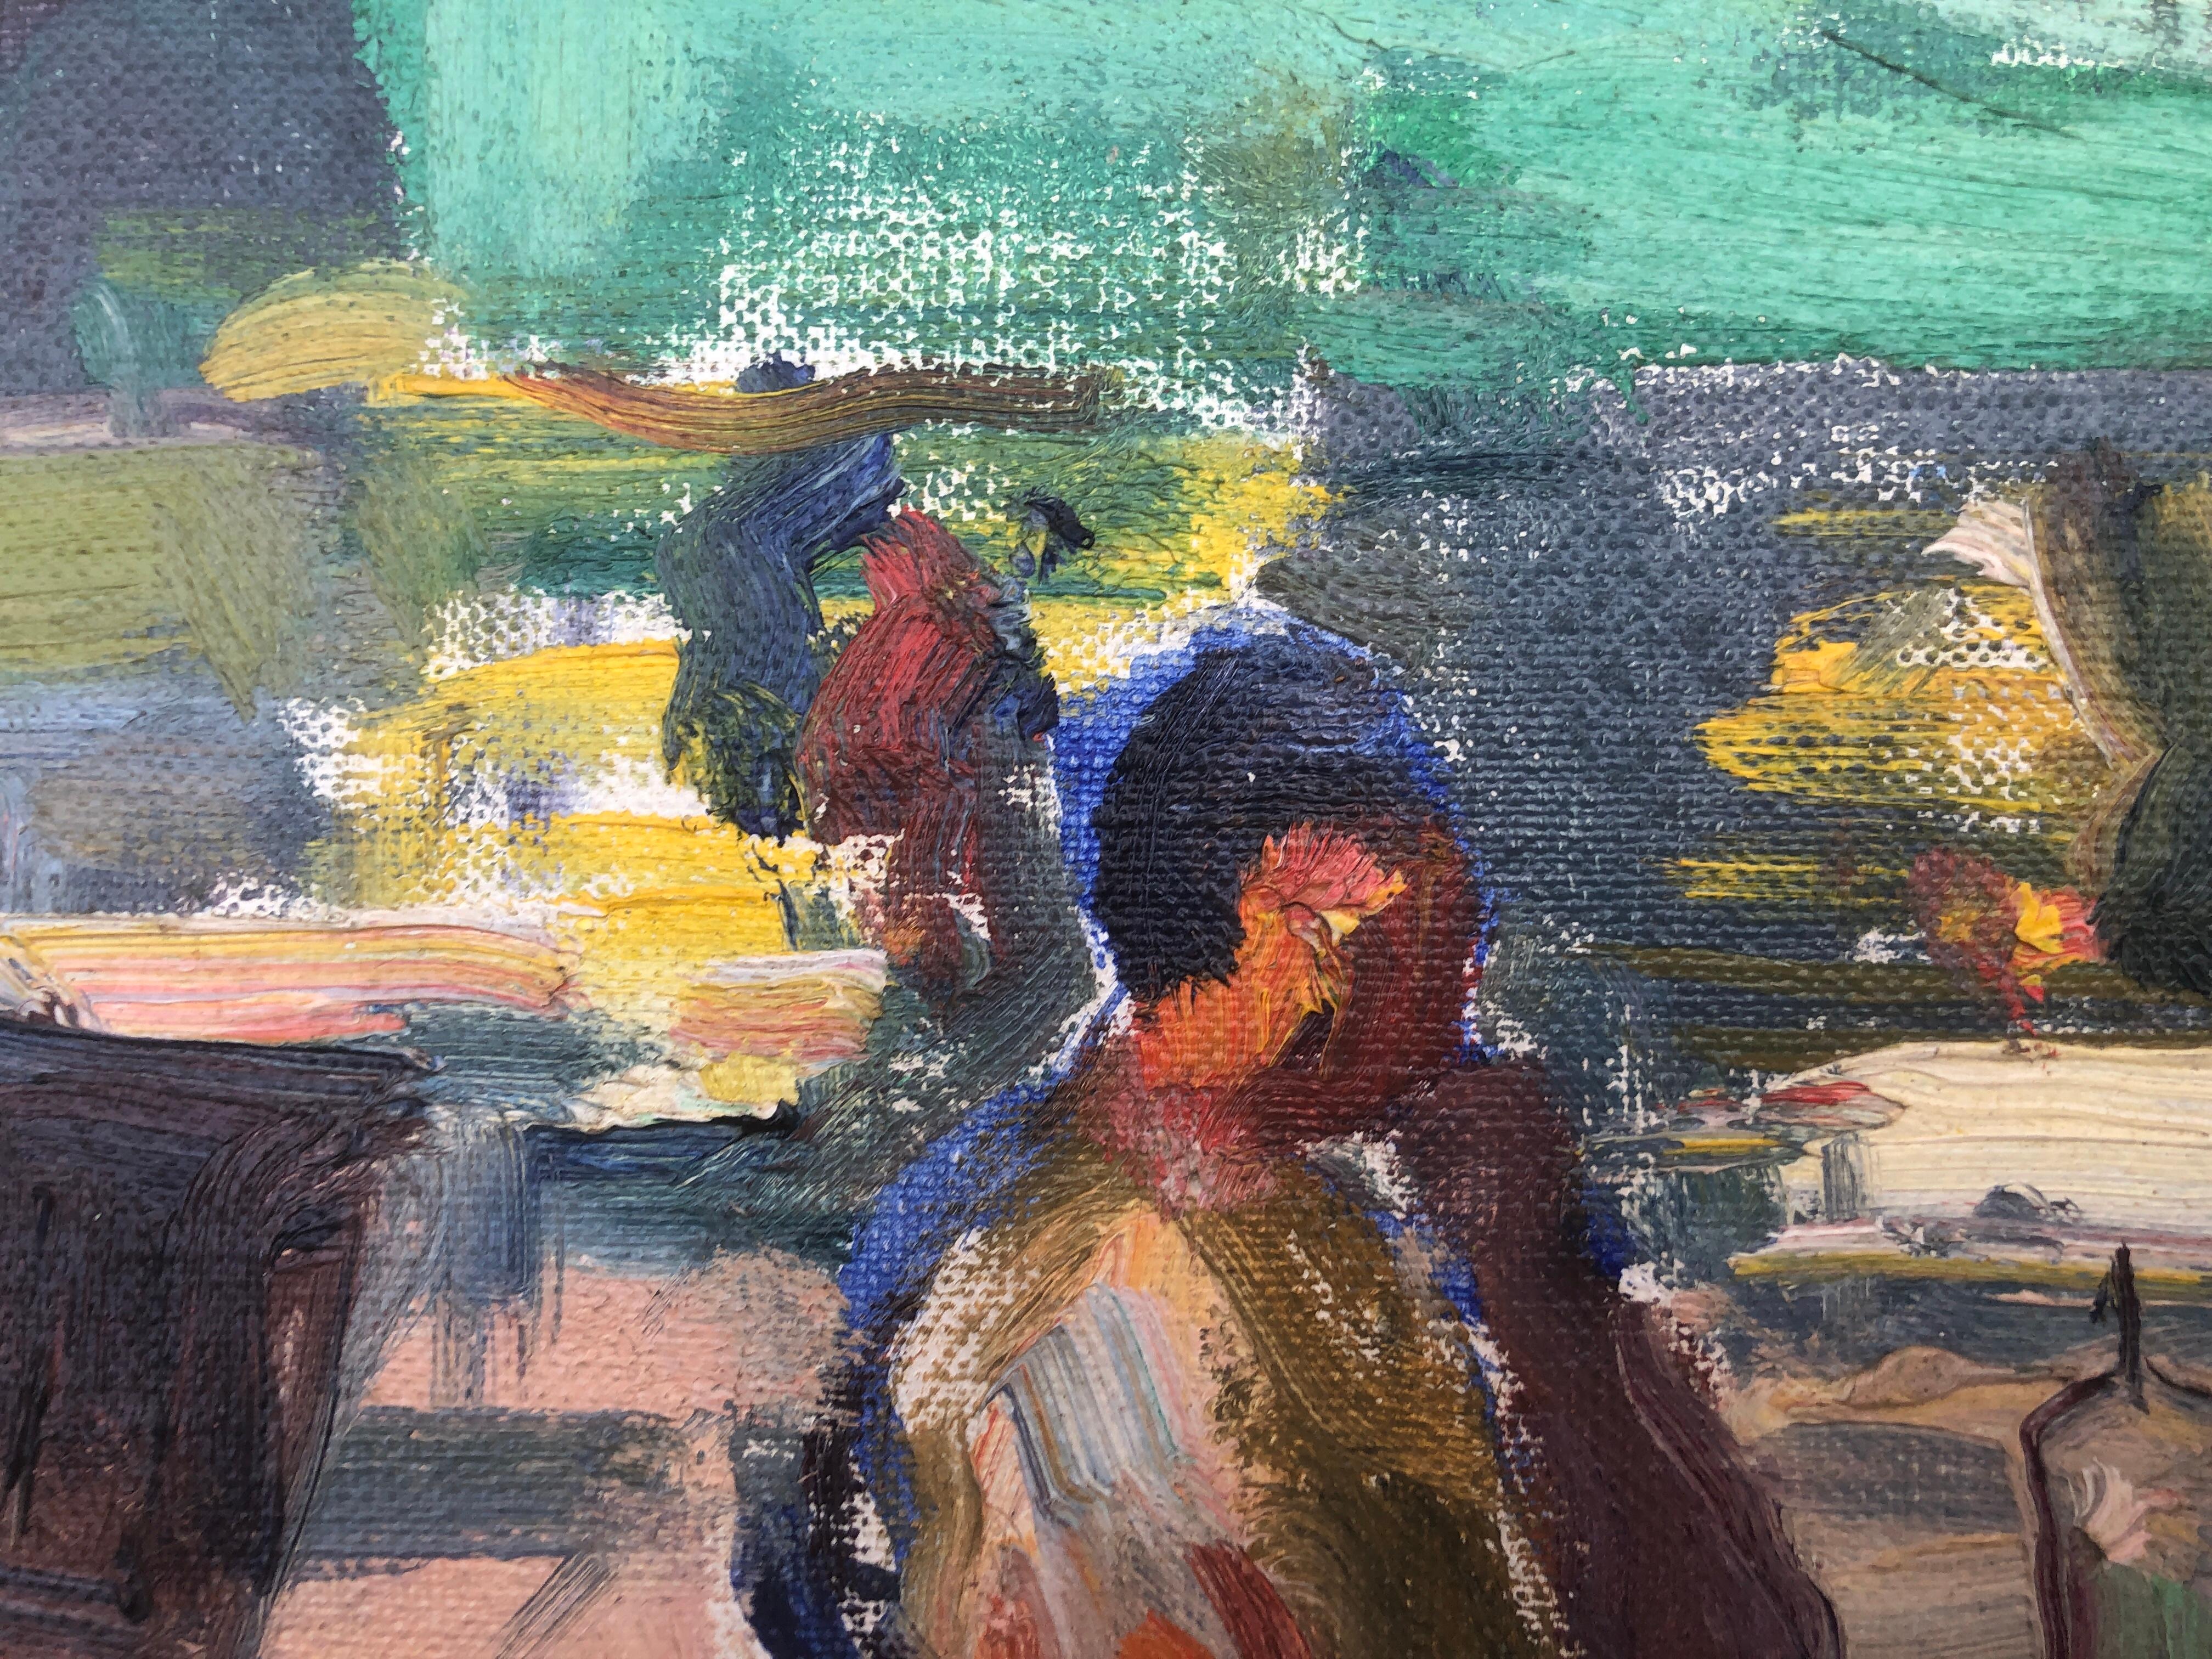 peritif auf der Terrasse der Bar, spanisches Gemälde in Öl auf Leinwand (Fauvismus), Painting, von Unknown